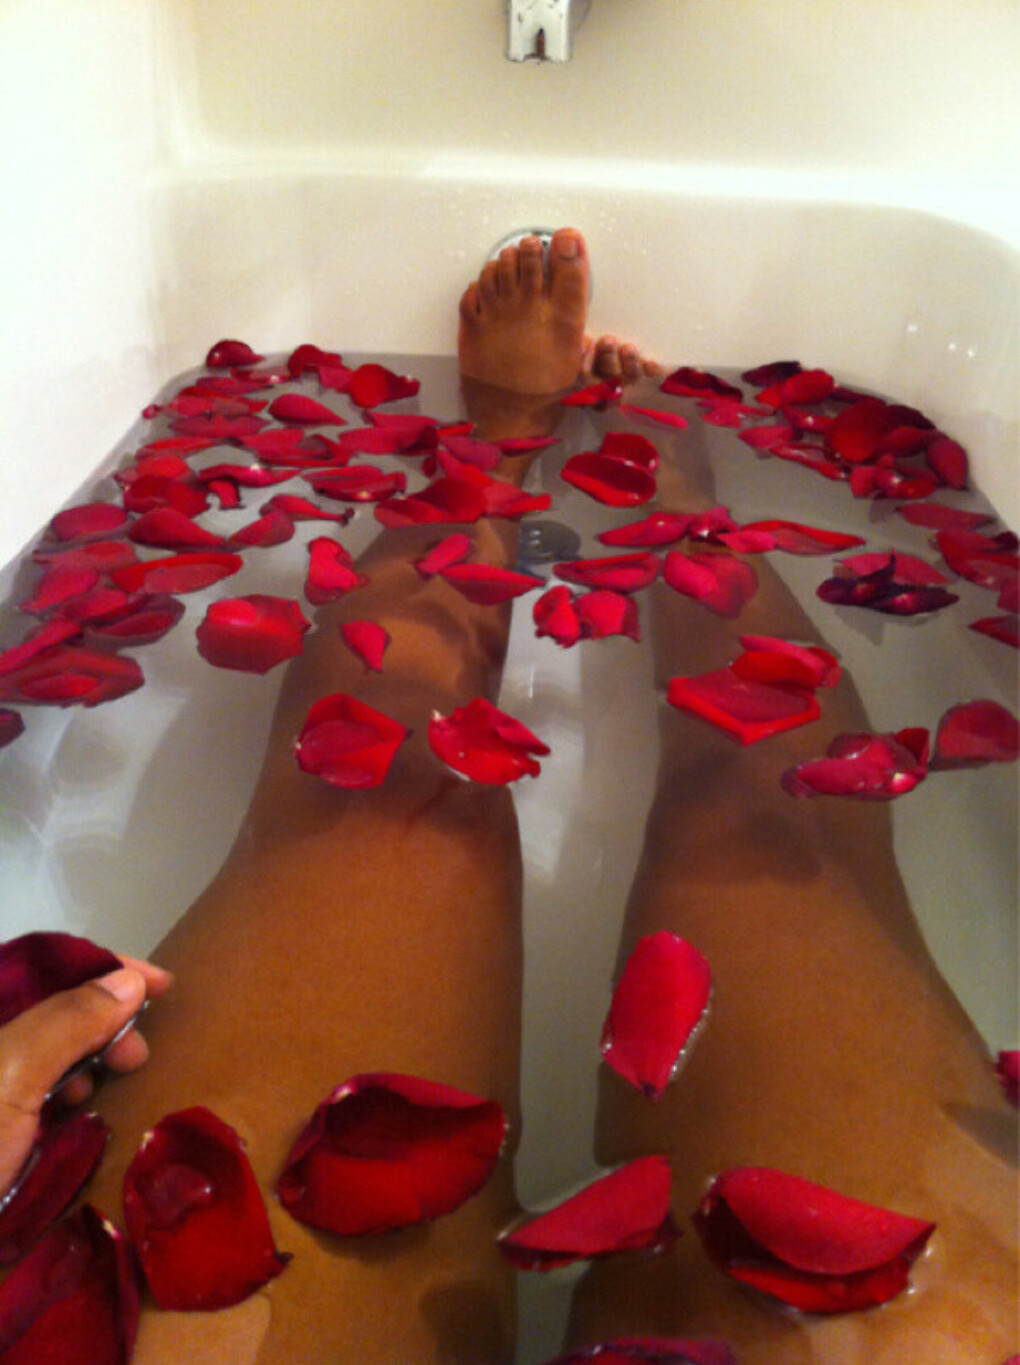 Прекрасная девушка в ванне с лепестками роз